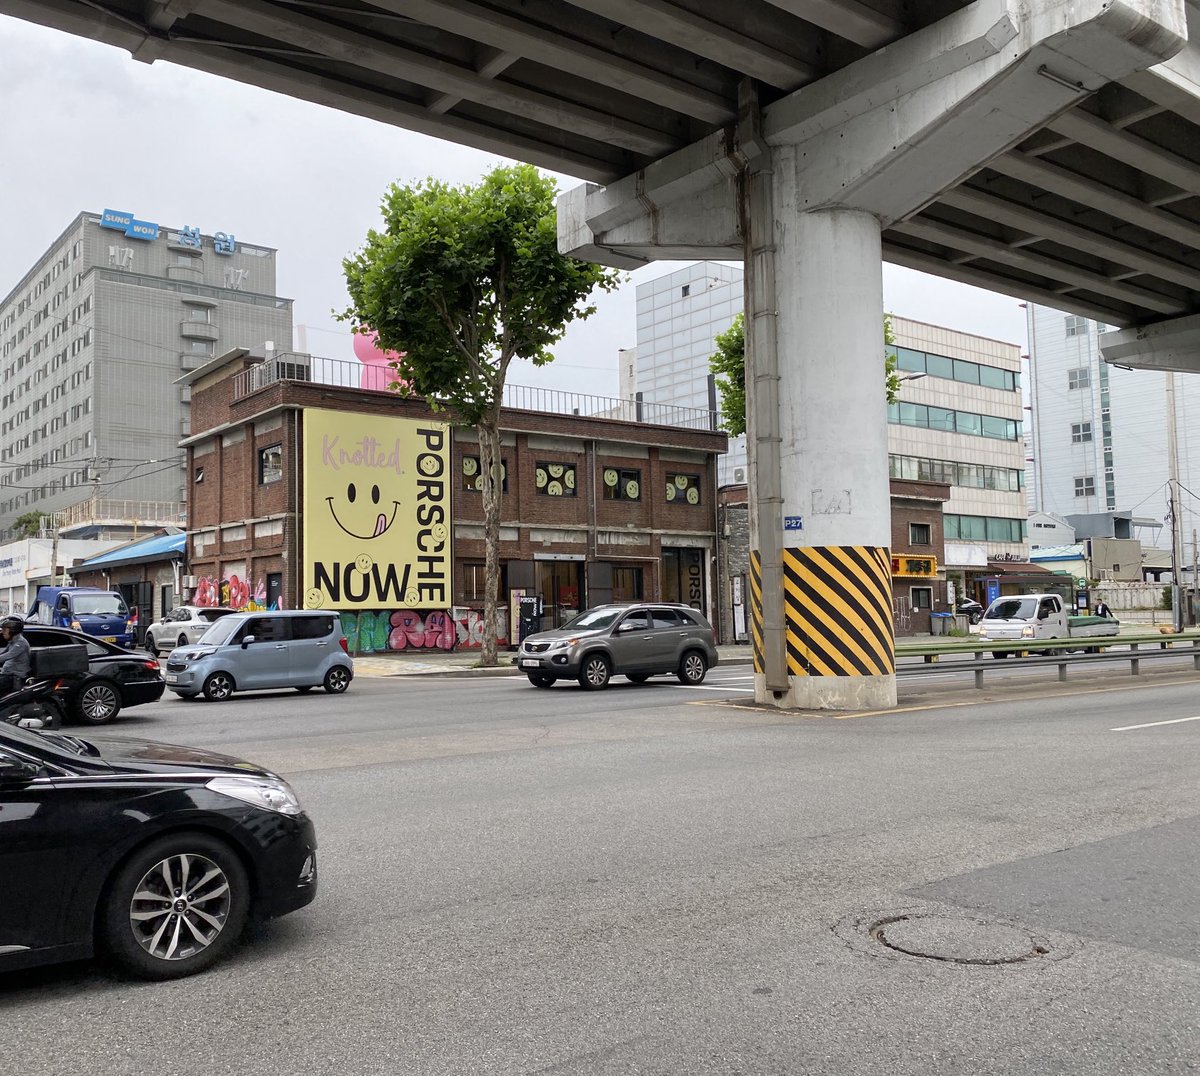 골져스한 것들이 모인 건물 #성수 #LCDC 만족👌🏻 걷다보니 노티드도 보이고